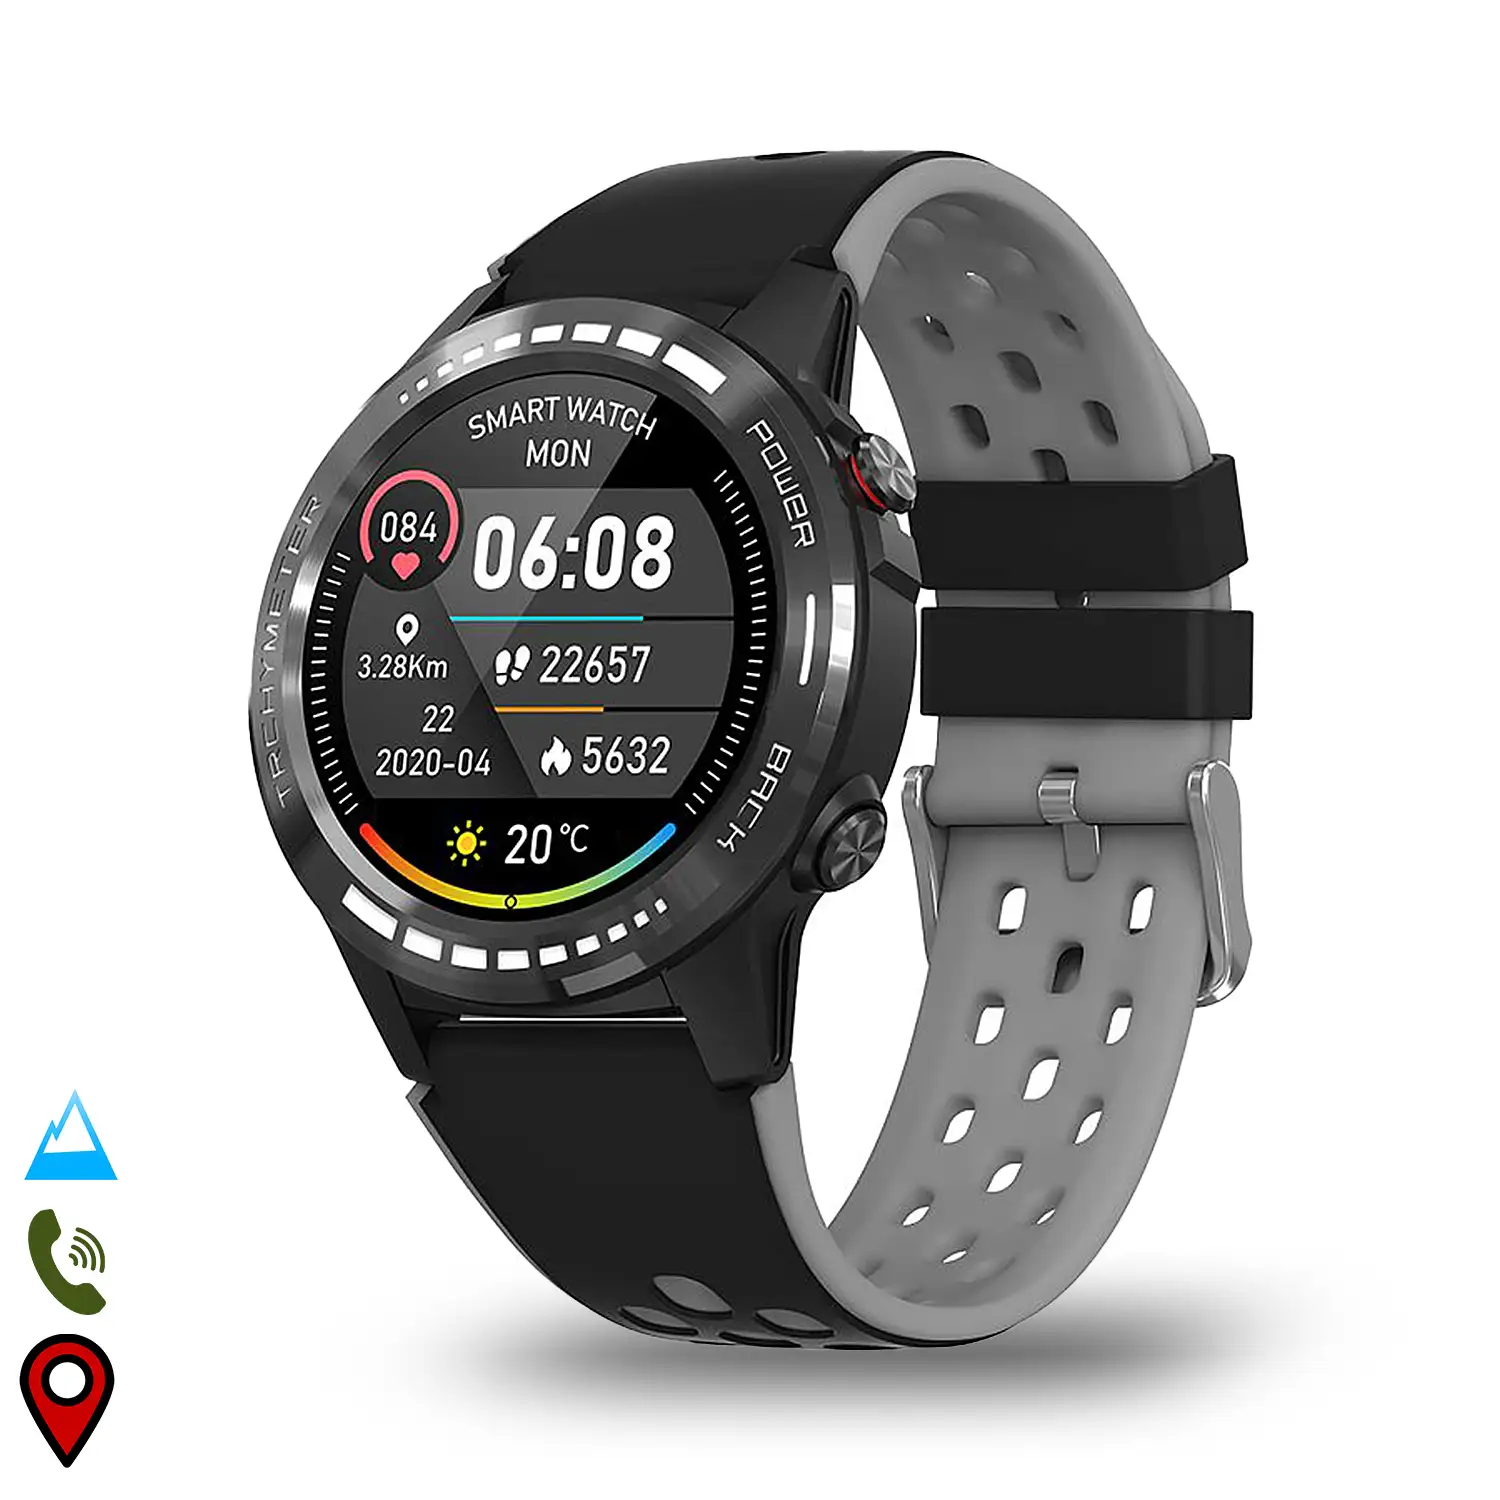 Smartwatch M7S con GPS, brújula, barómetro y altímetro. Slot para tarjeta SIM. Funciones deportivas y de salud.